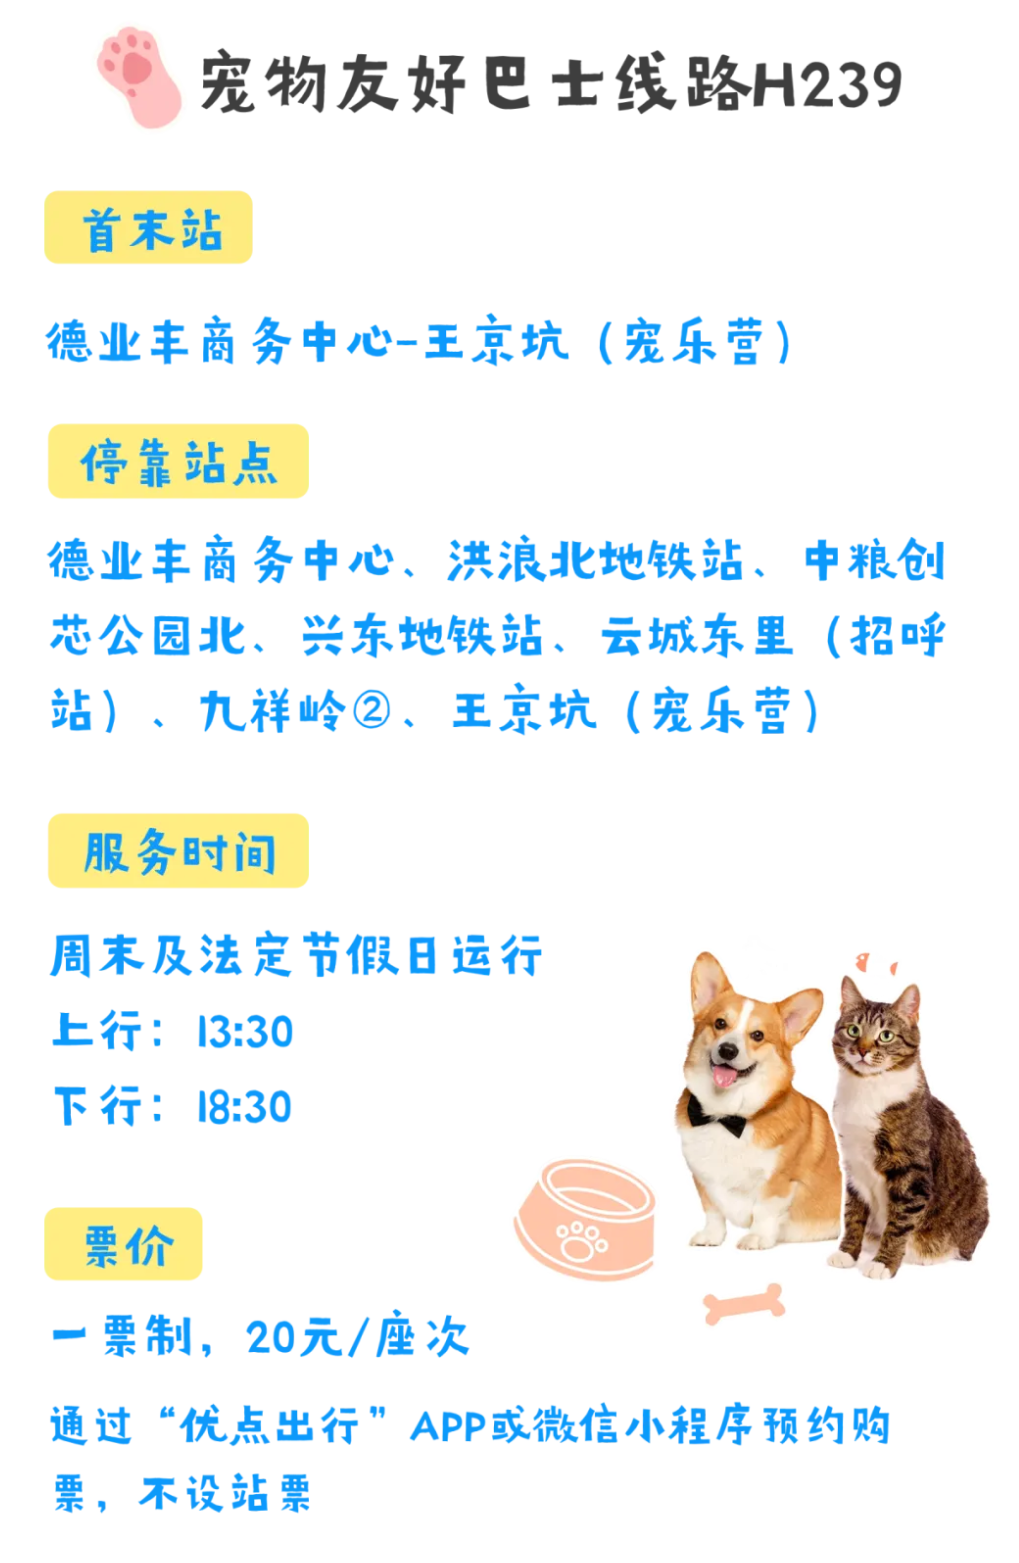 宠物友好巴士来啦！深圳首条宠物定制巴士开通，首周有优惠